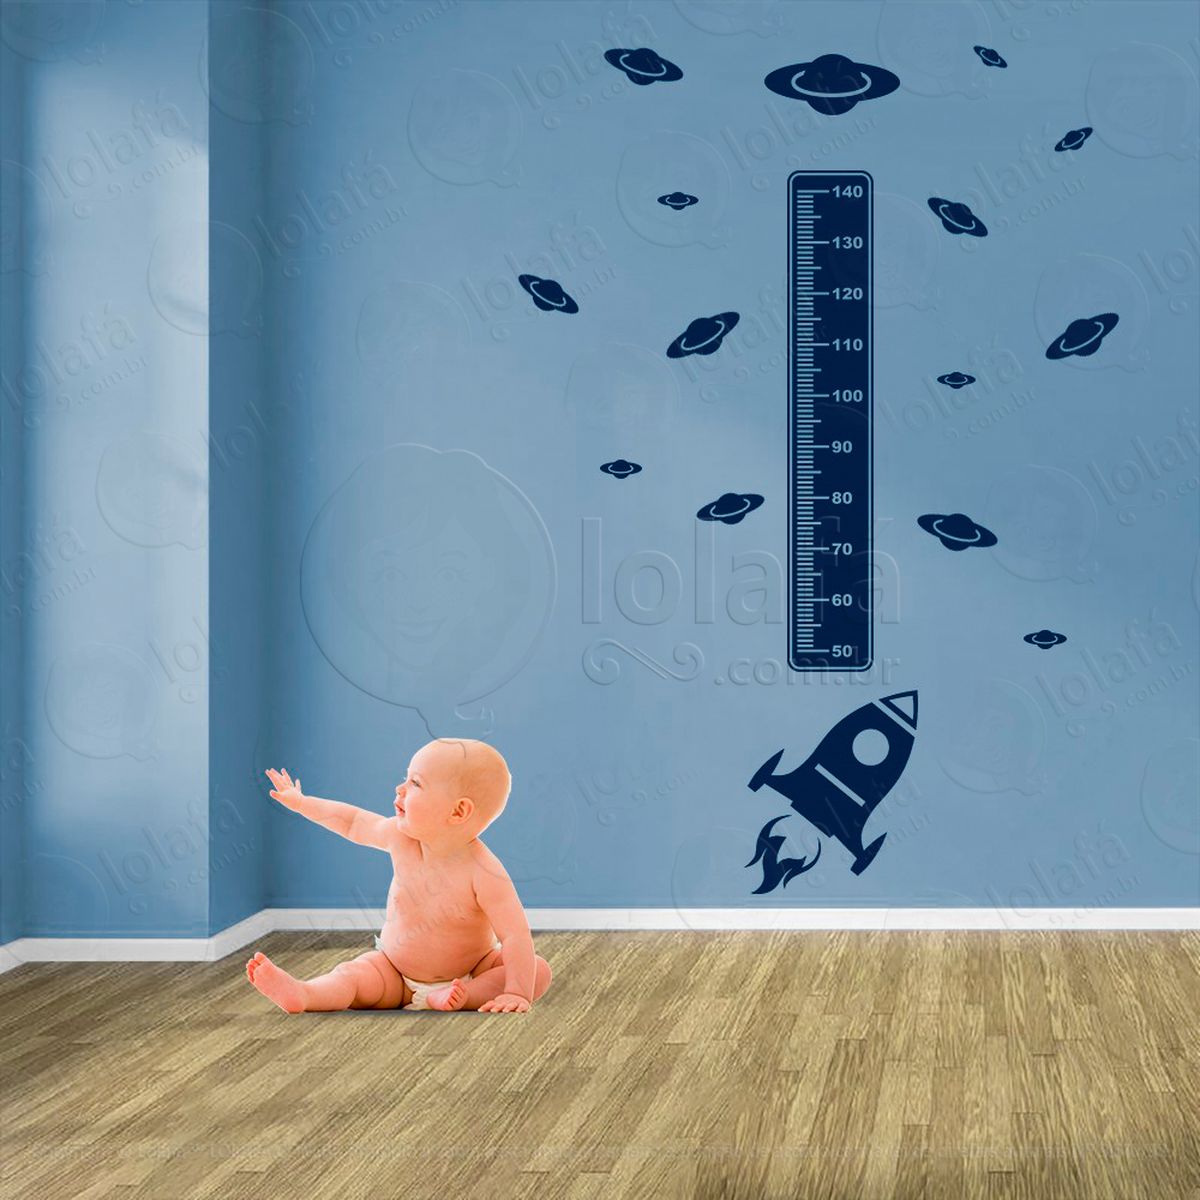 foguete e planetas adesivo régua de crescimento infantil, medidor de altura para quarto, porta e parede - mod:1256